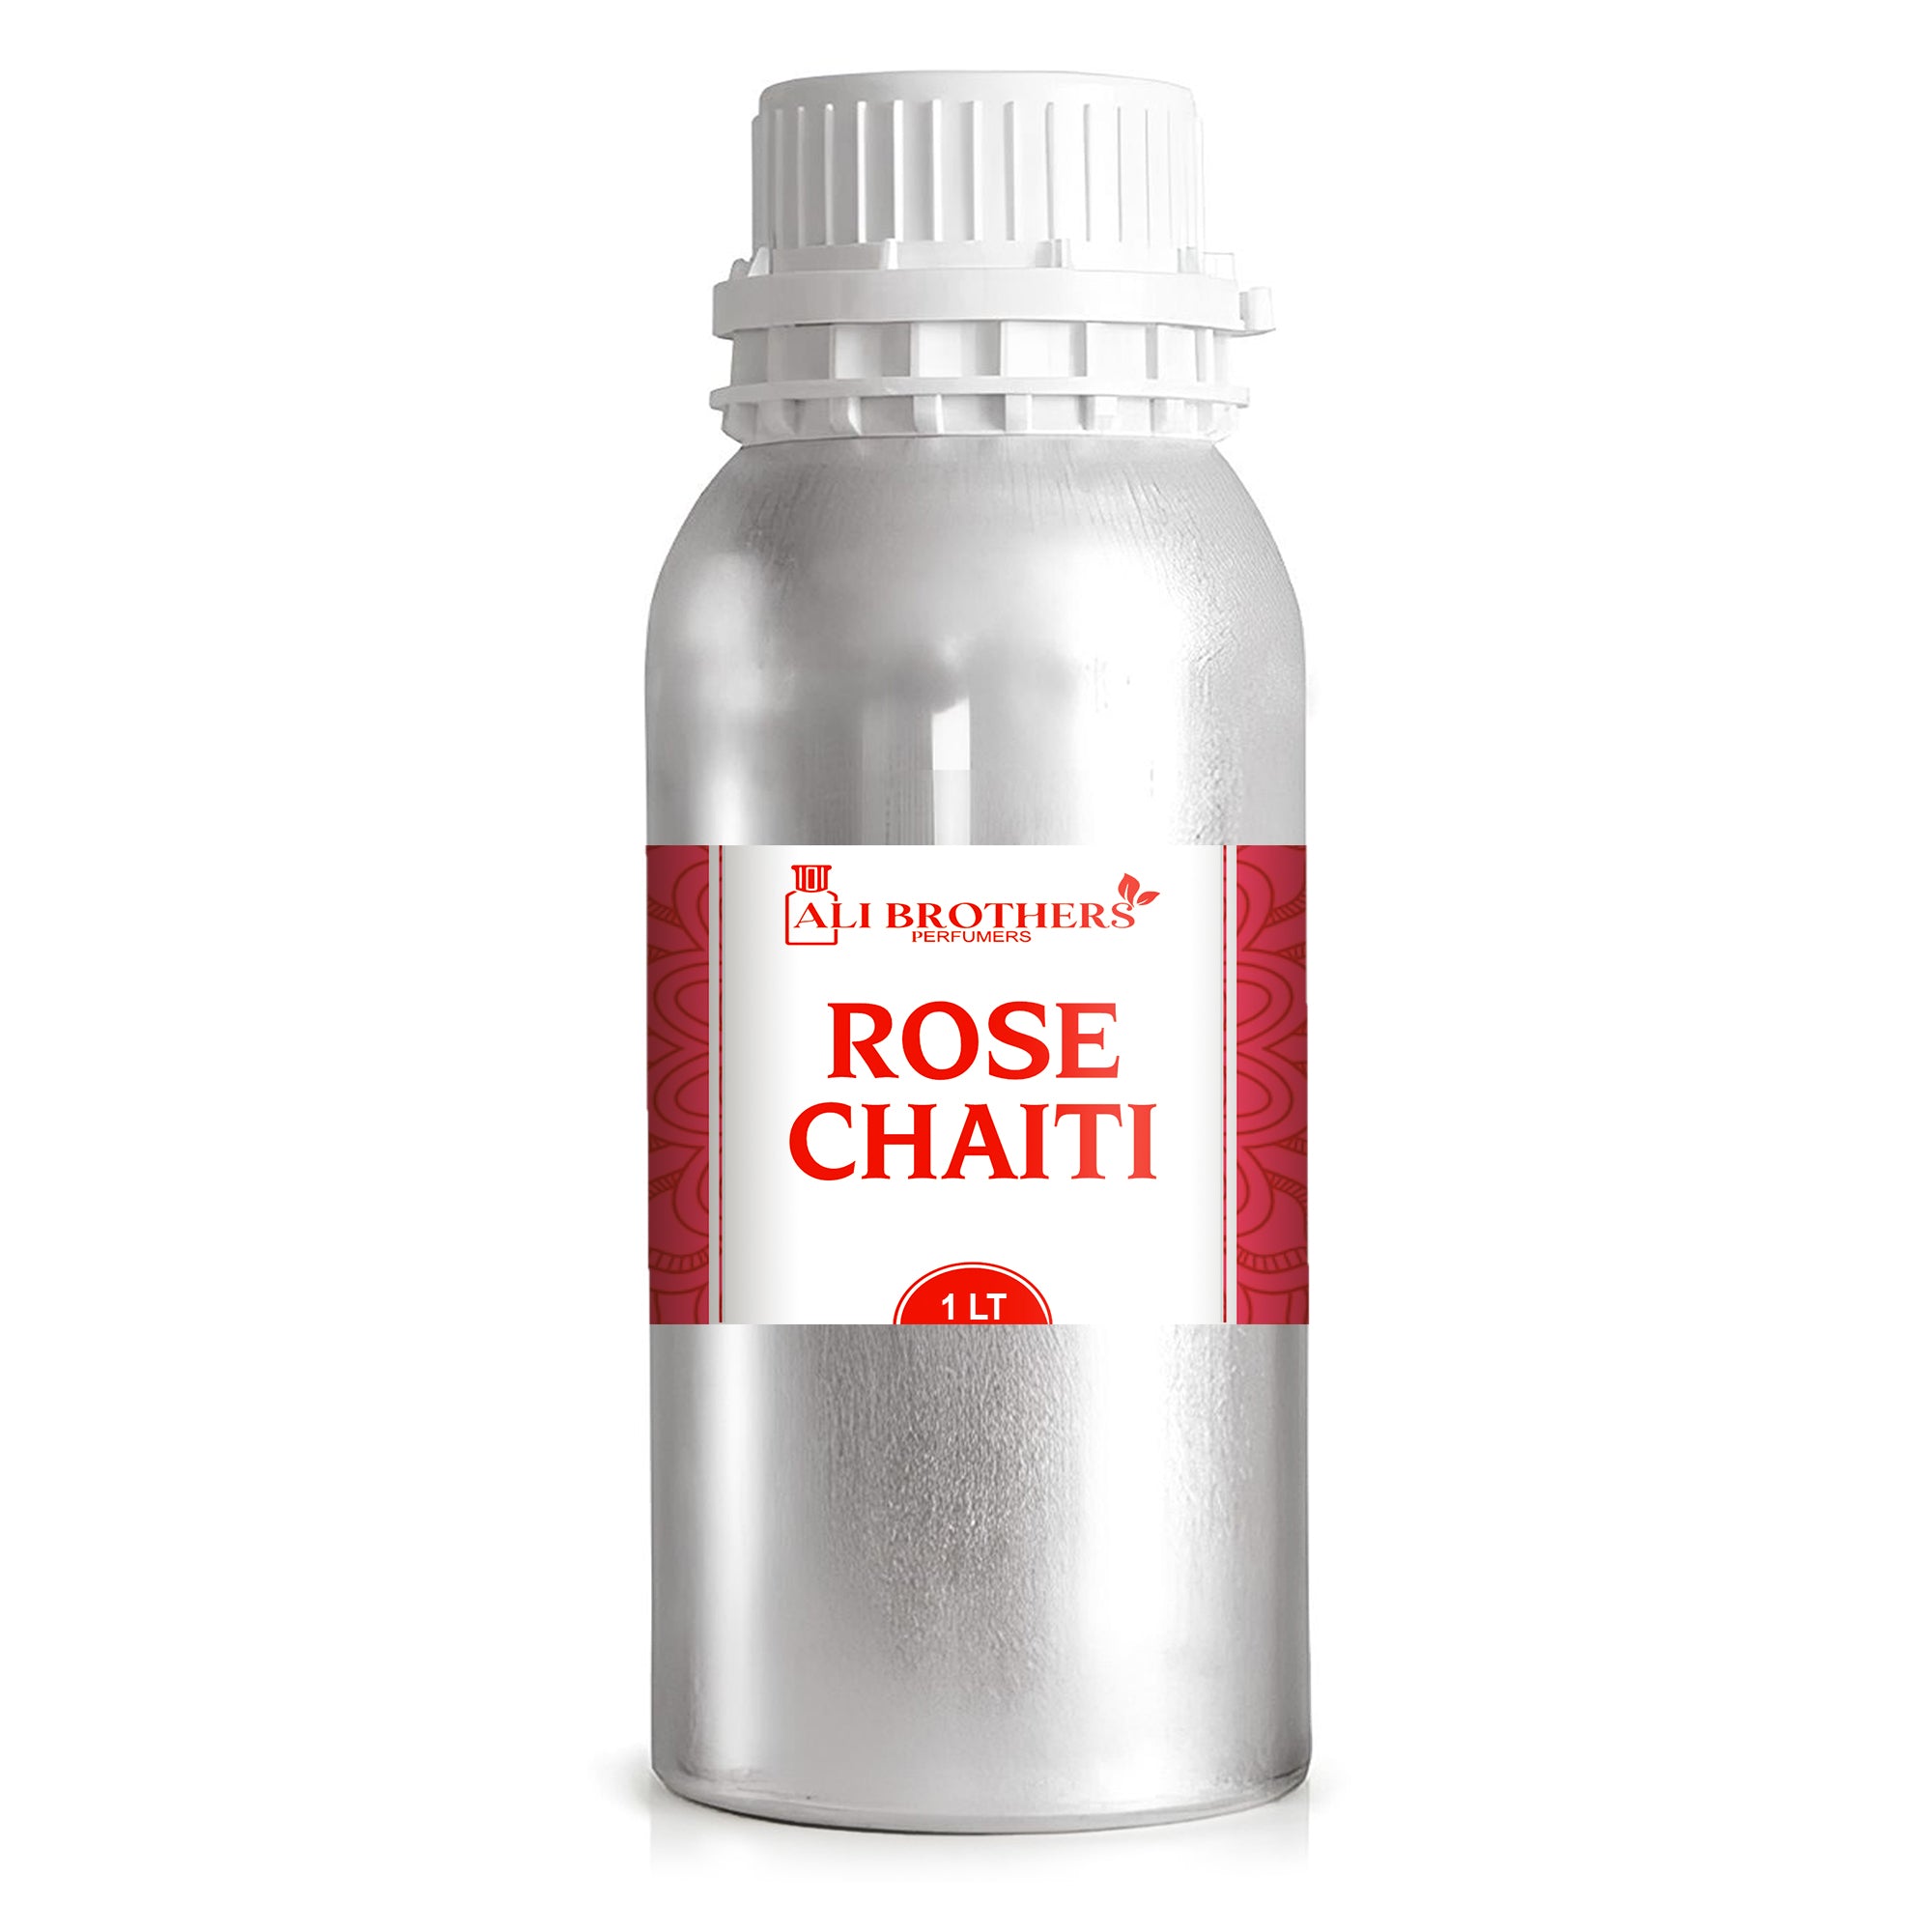 Rose Chaiti